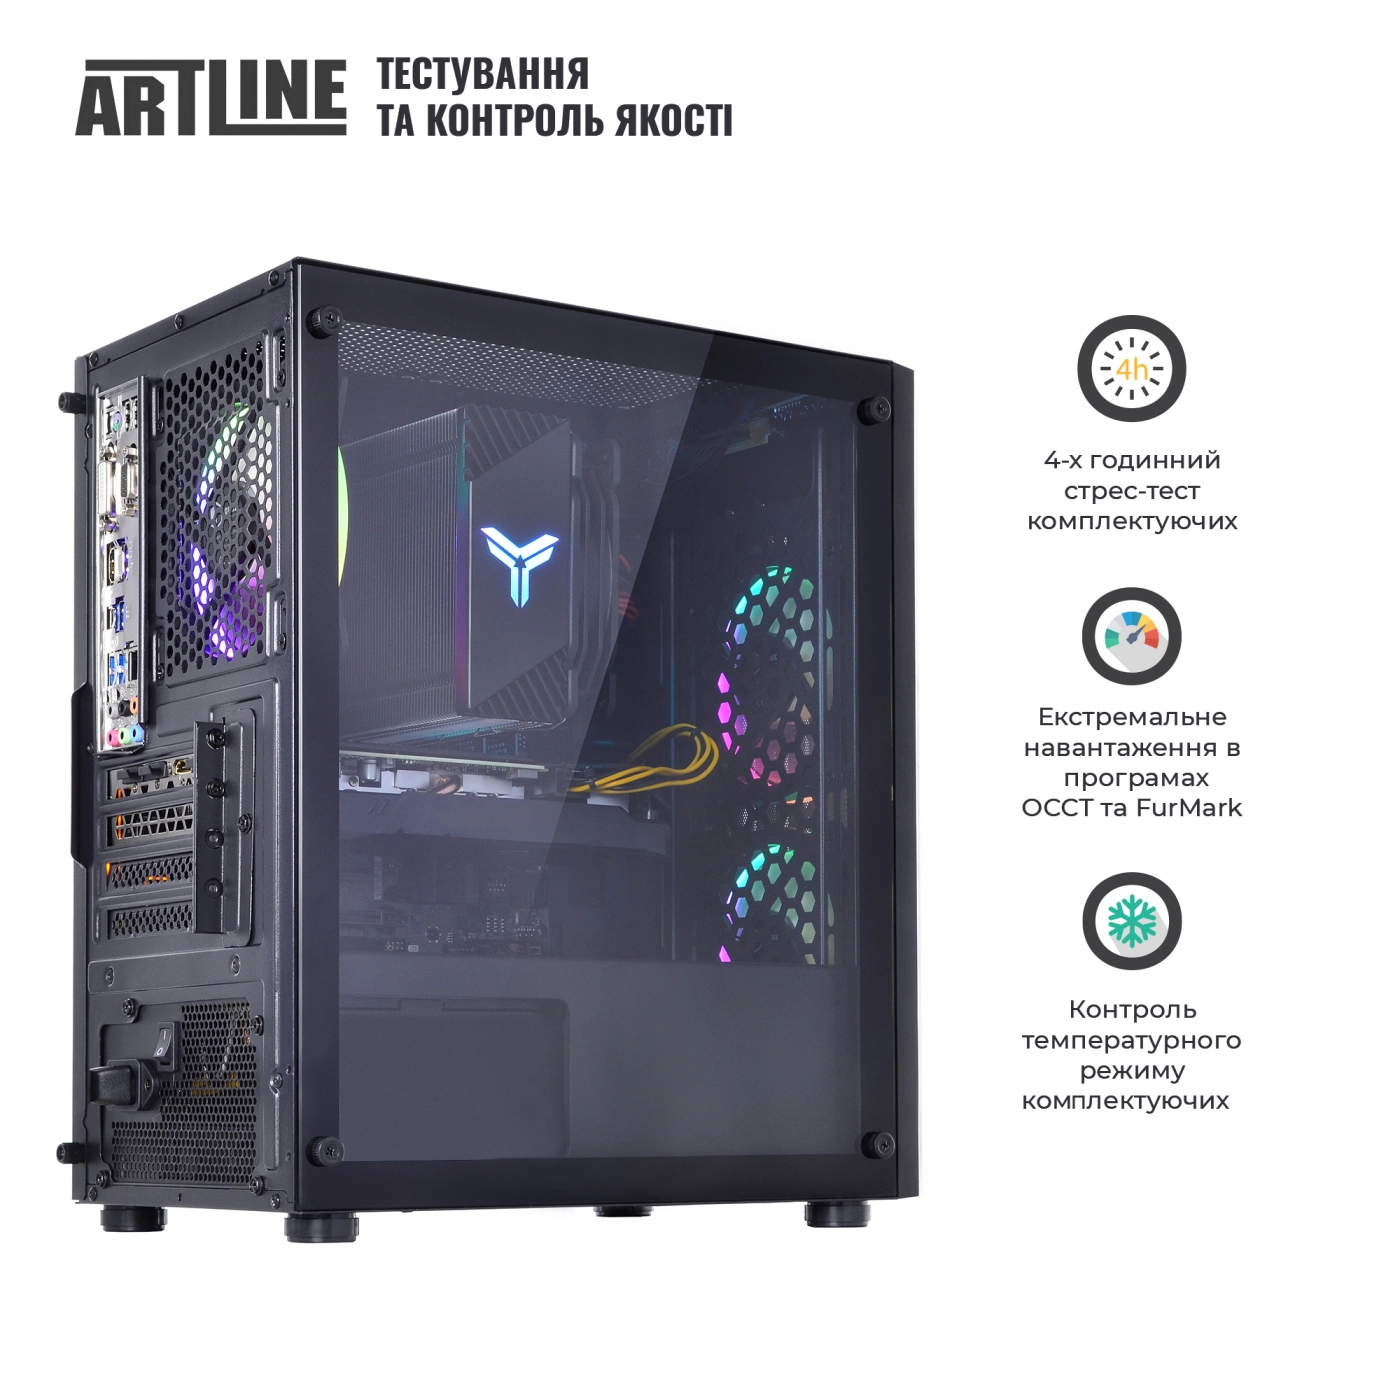 Купить Компьютер ARTLINE Gaming X71v27 - фото 8